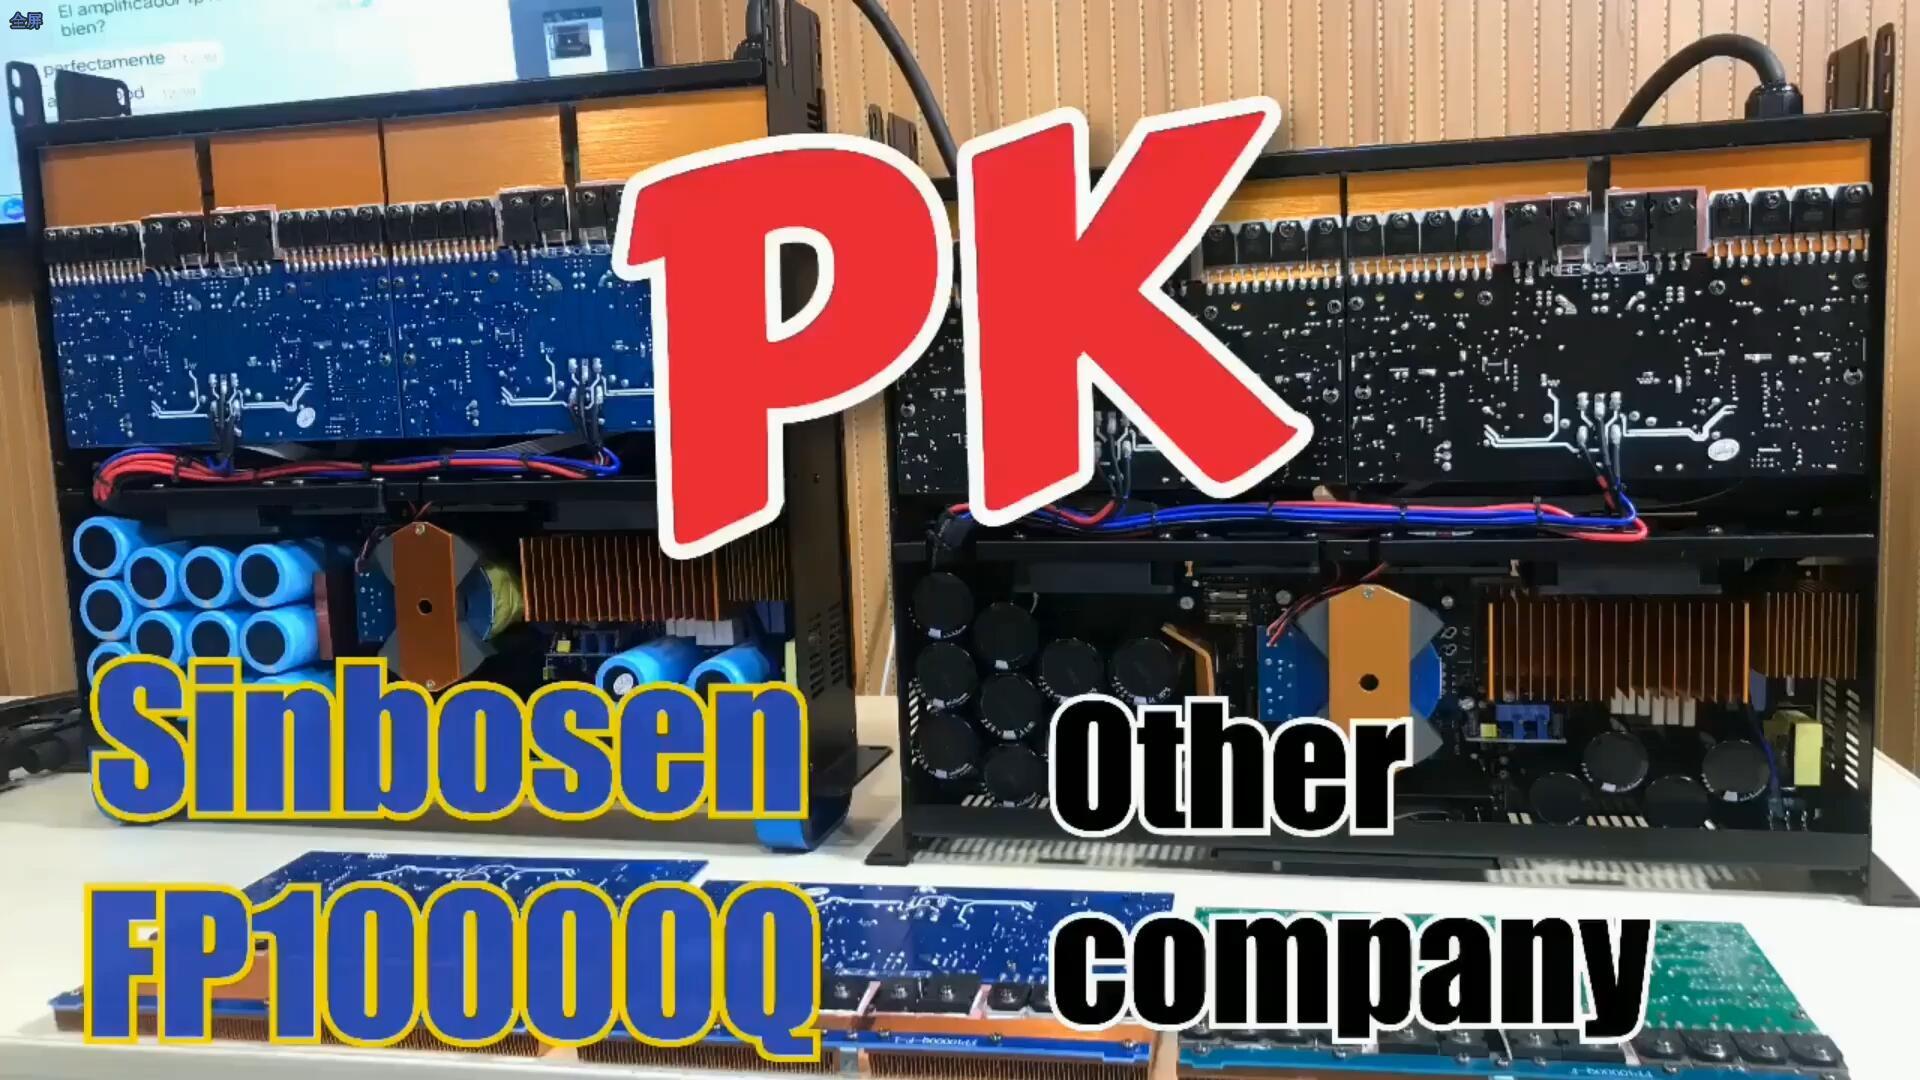 Sinbosen FP10000Q PK outra empresa